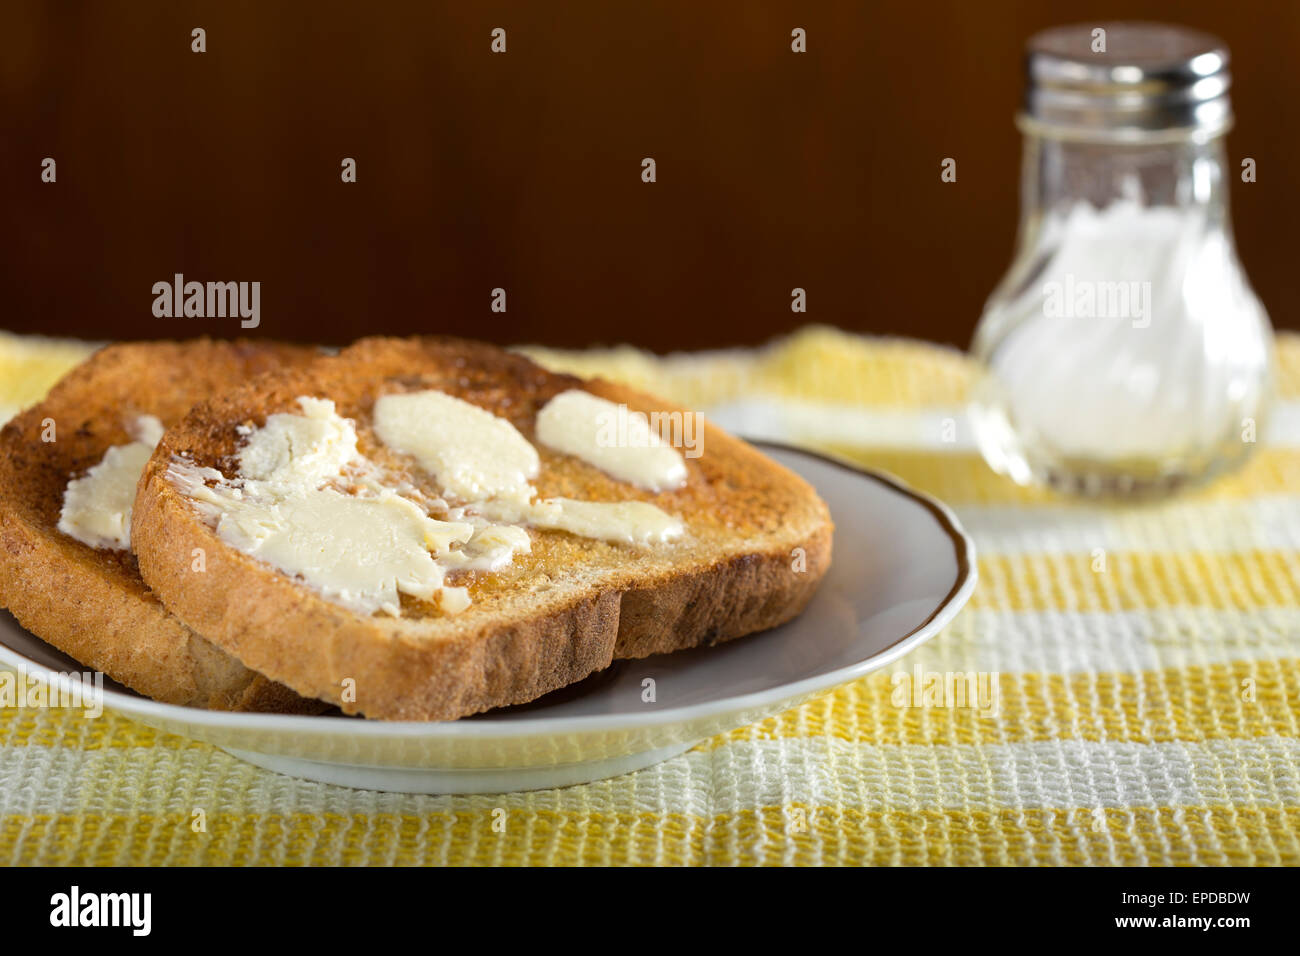 Deux tranches de pain grillé au beurre blanc sur une assiette avec du sel Banque D'Images